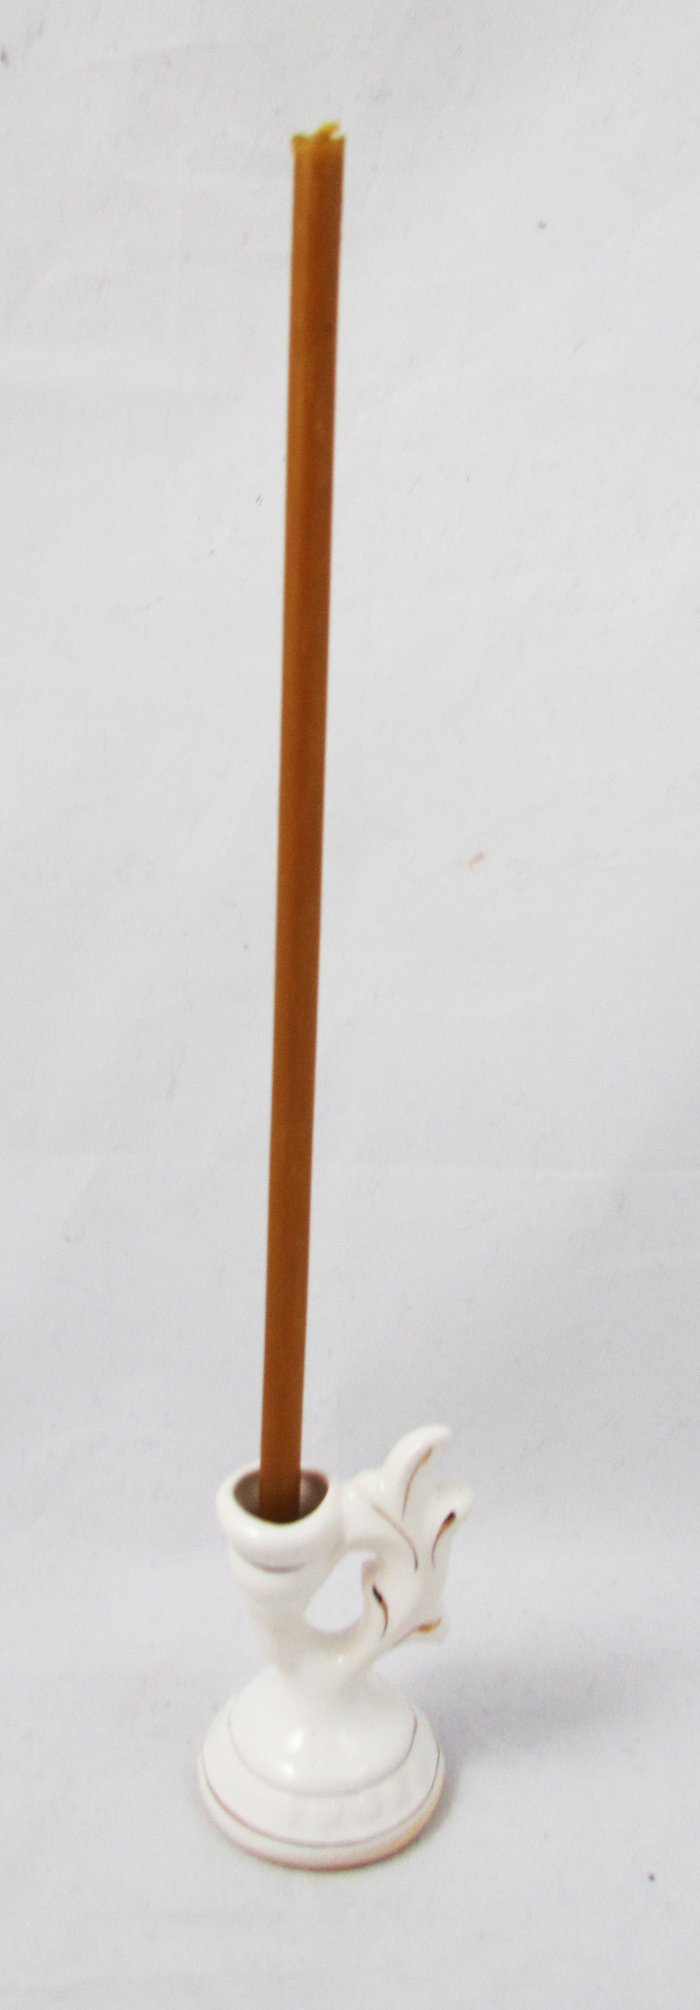 Подсвечник Греческий с ручкой, белая глазурь, керамика, 4х7 см, отделка золотом